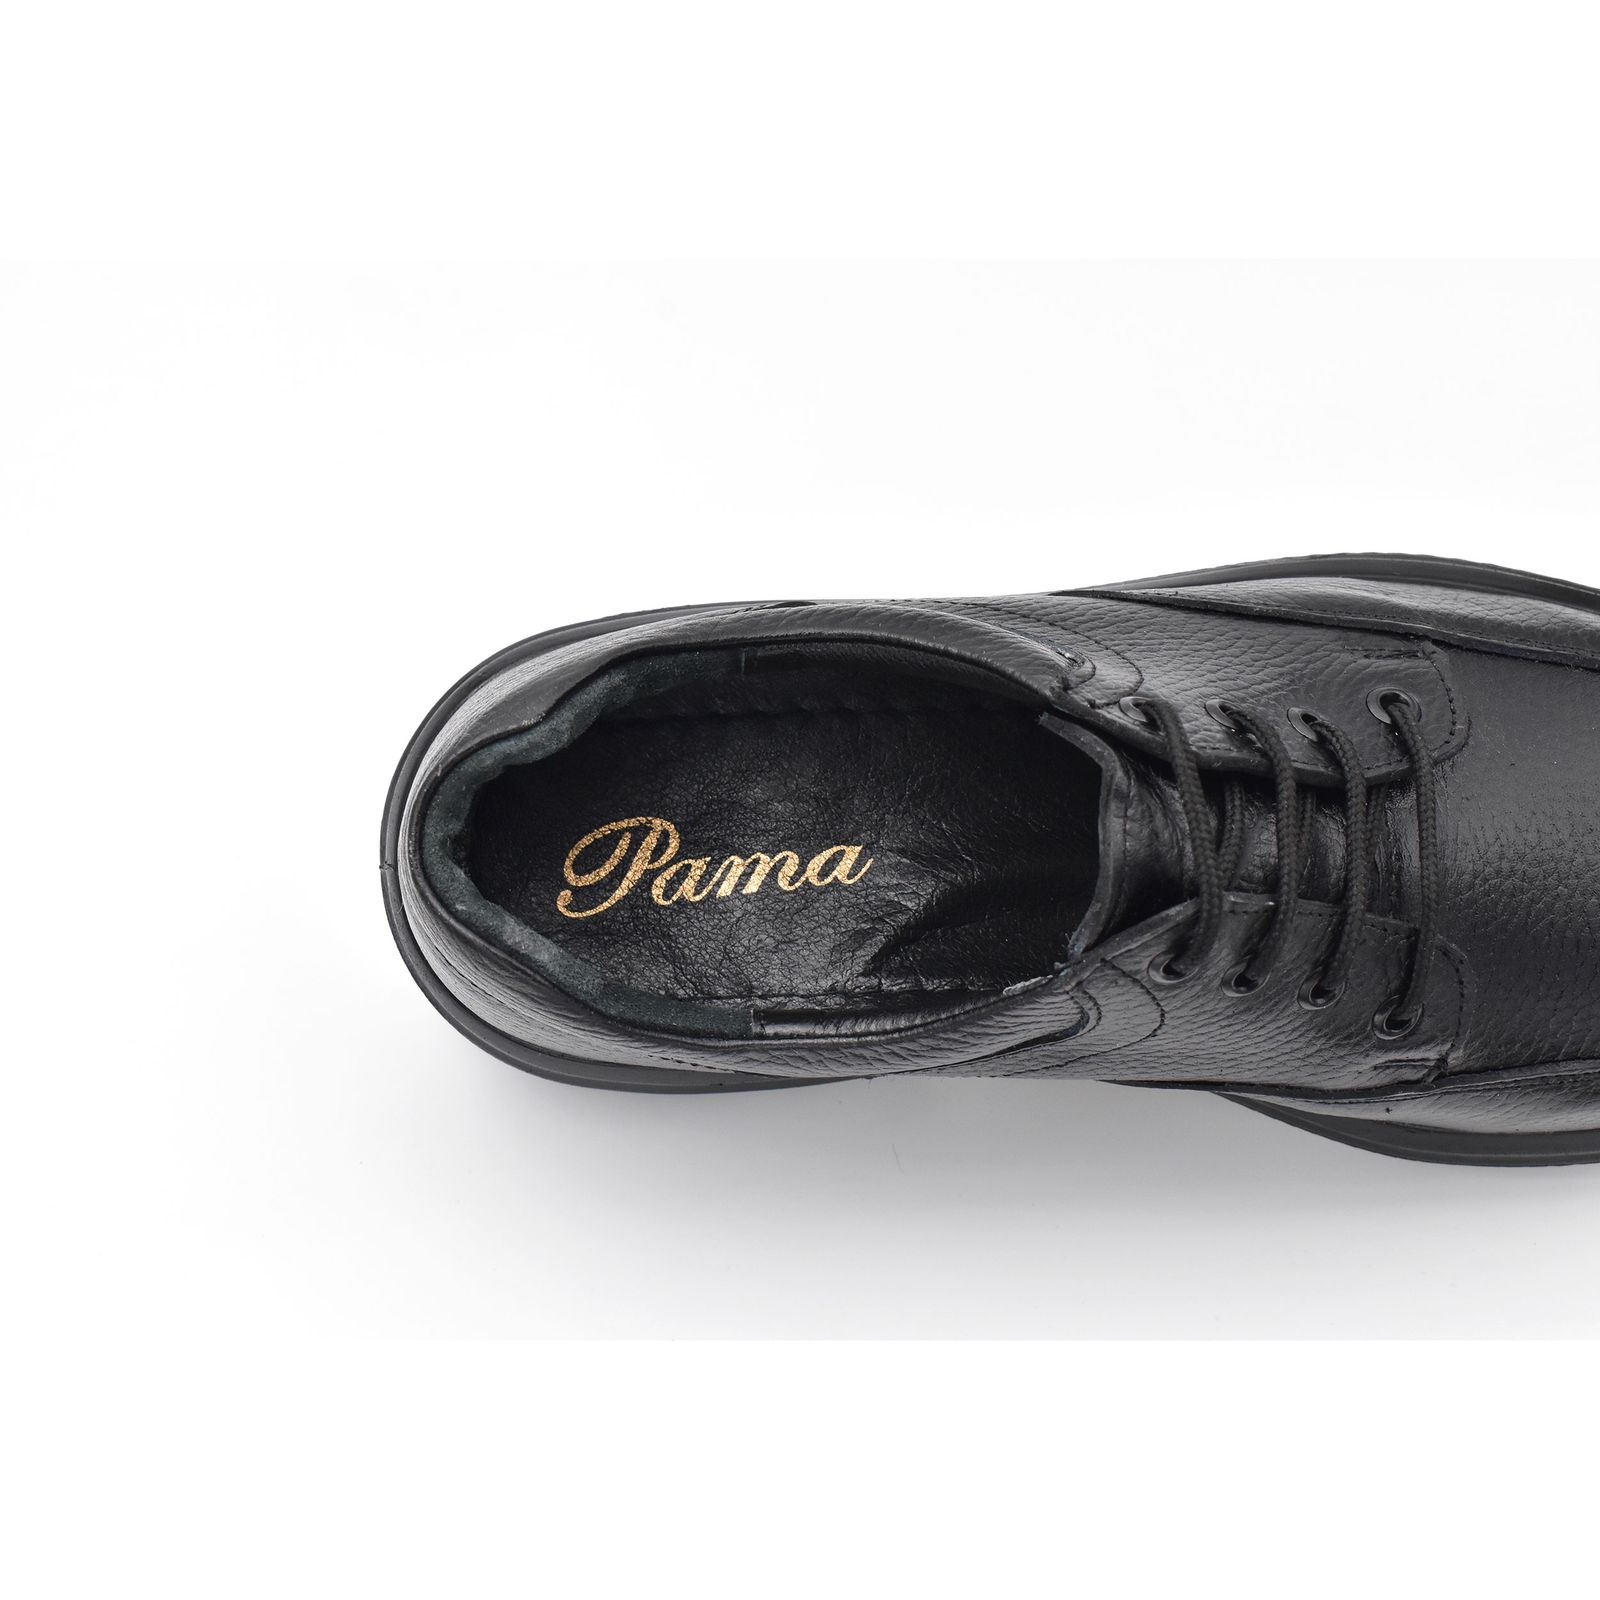 کفش روزمره مردانه پاما مدل Arizona کد G1171 -  - 9